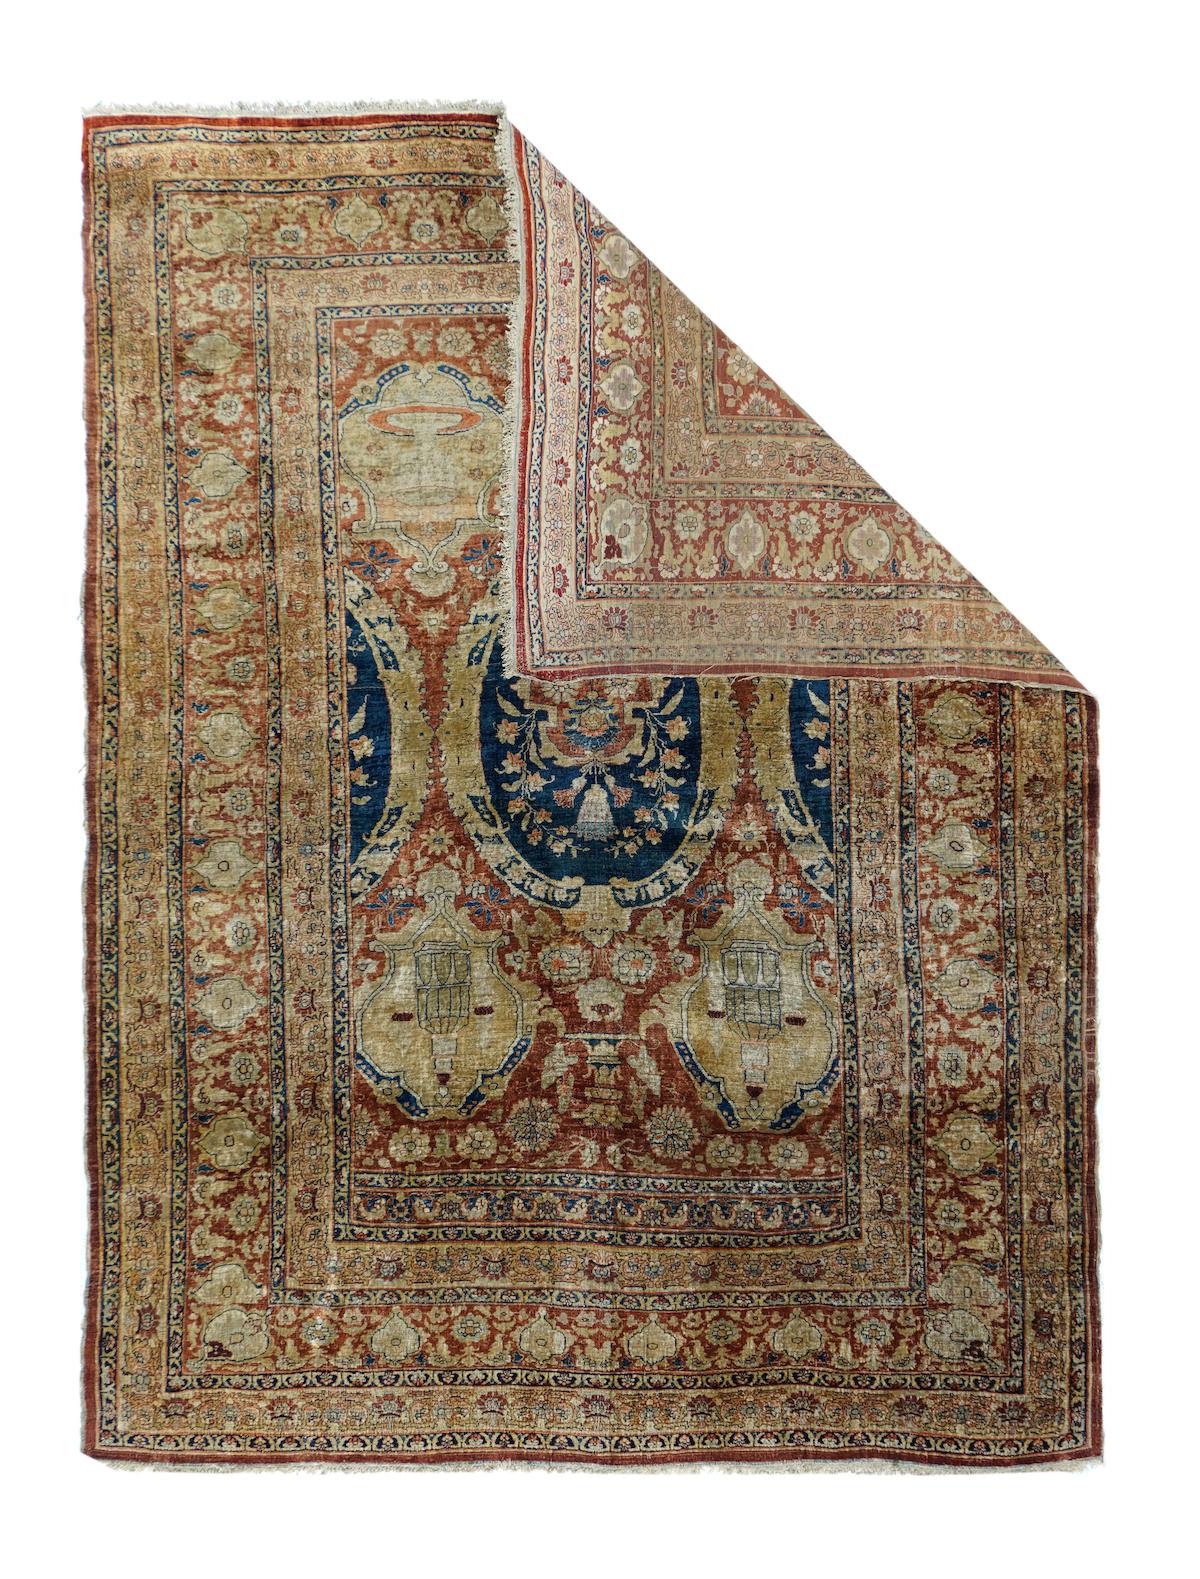 Antique Heriz rug measures 4'7'' x 6'1''.